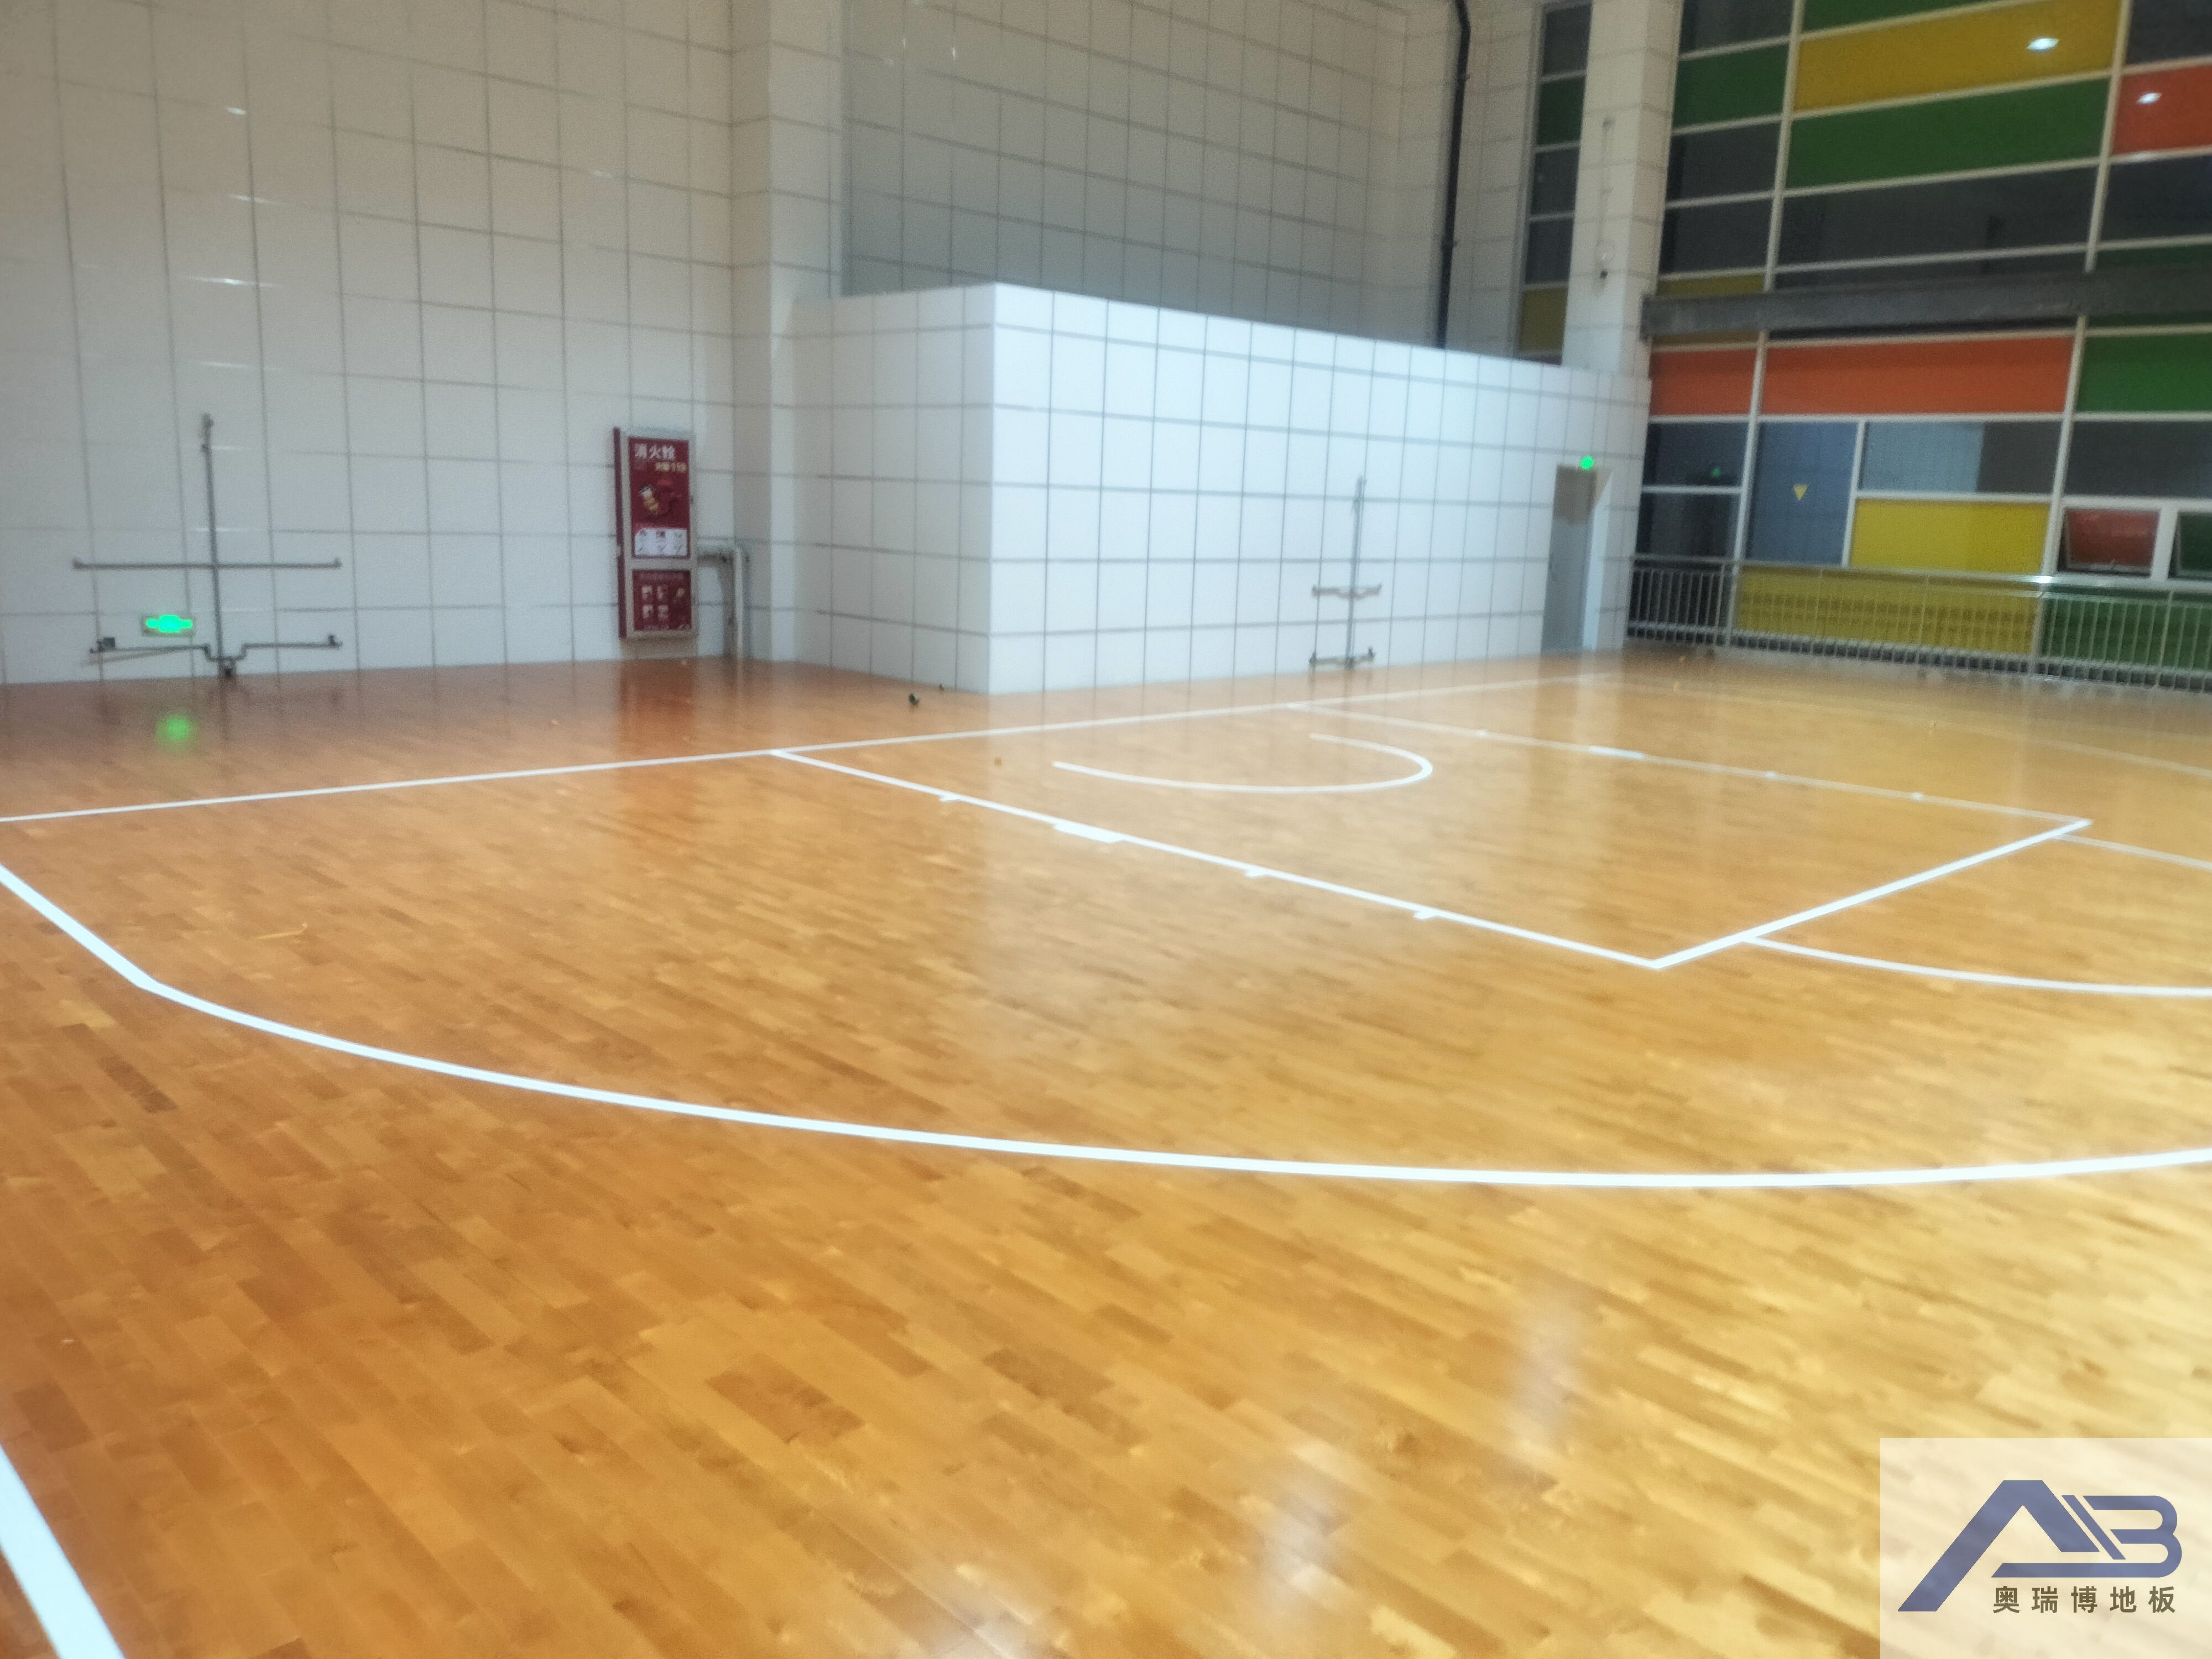 涞源县体育馆选择奥瑞博品牌的运动木地板作为地面材料